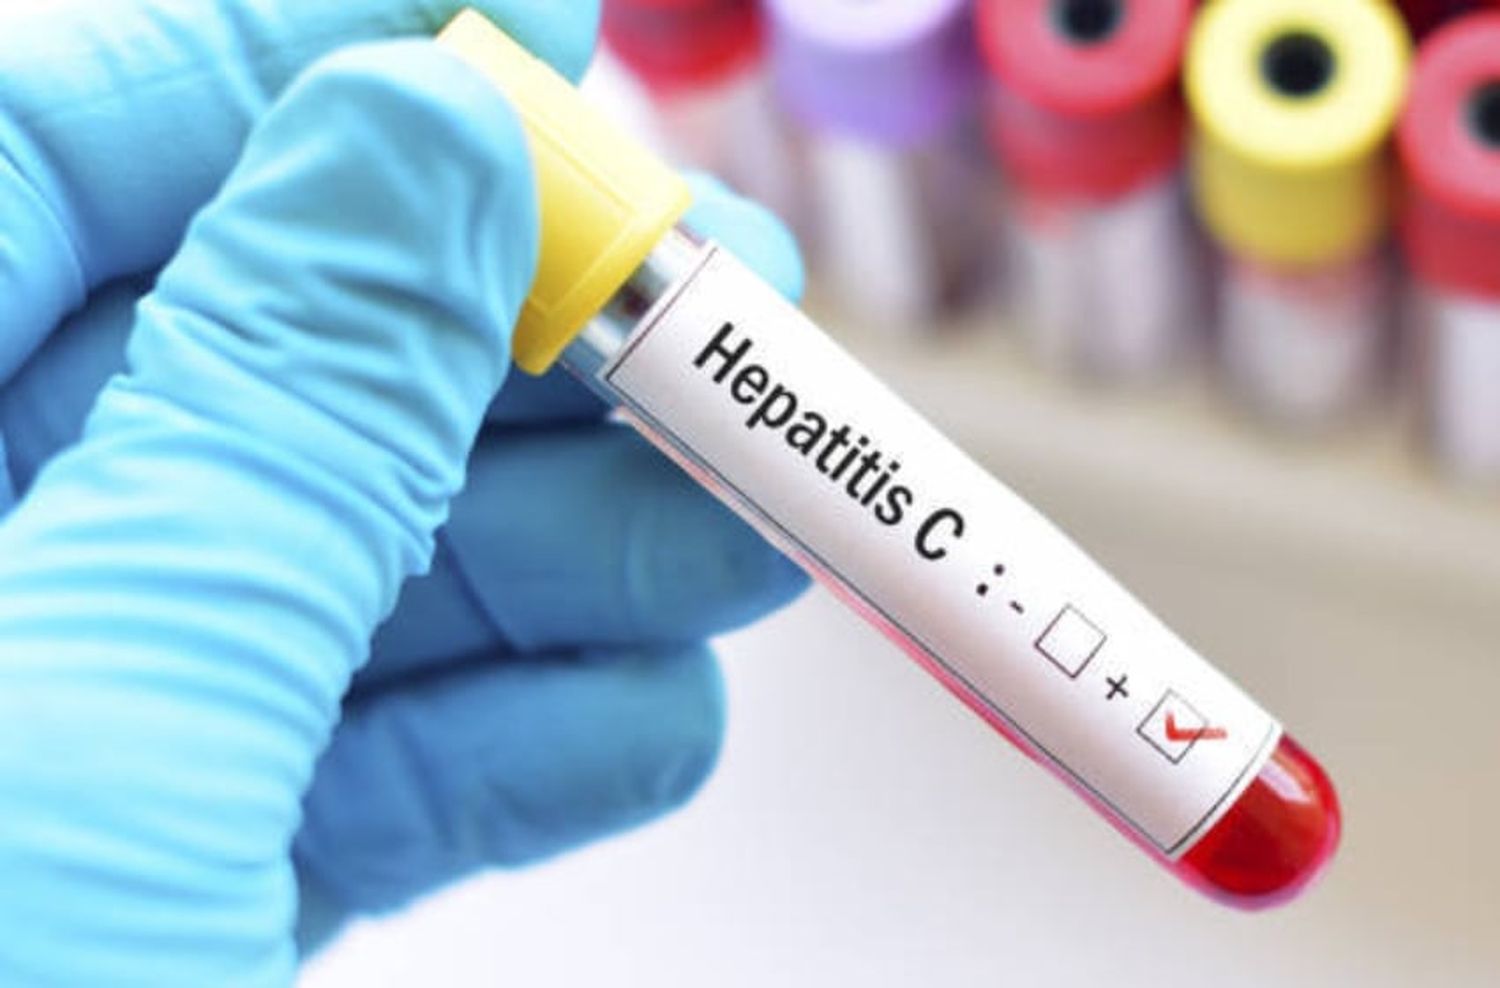 "El 78% de los casos de cáncer hepático primario es por hepatitis B o C"